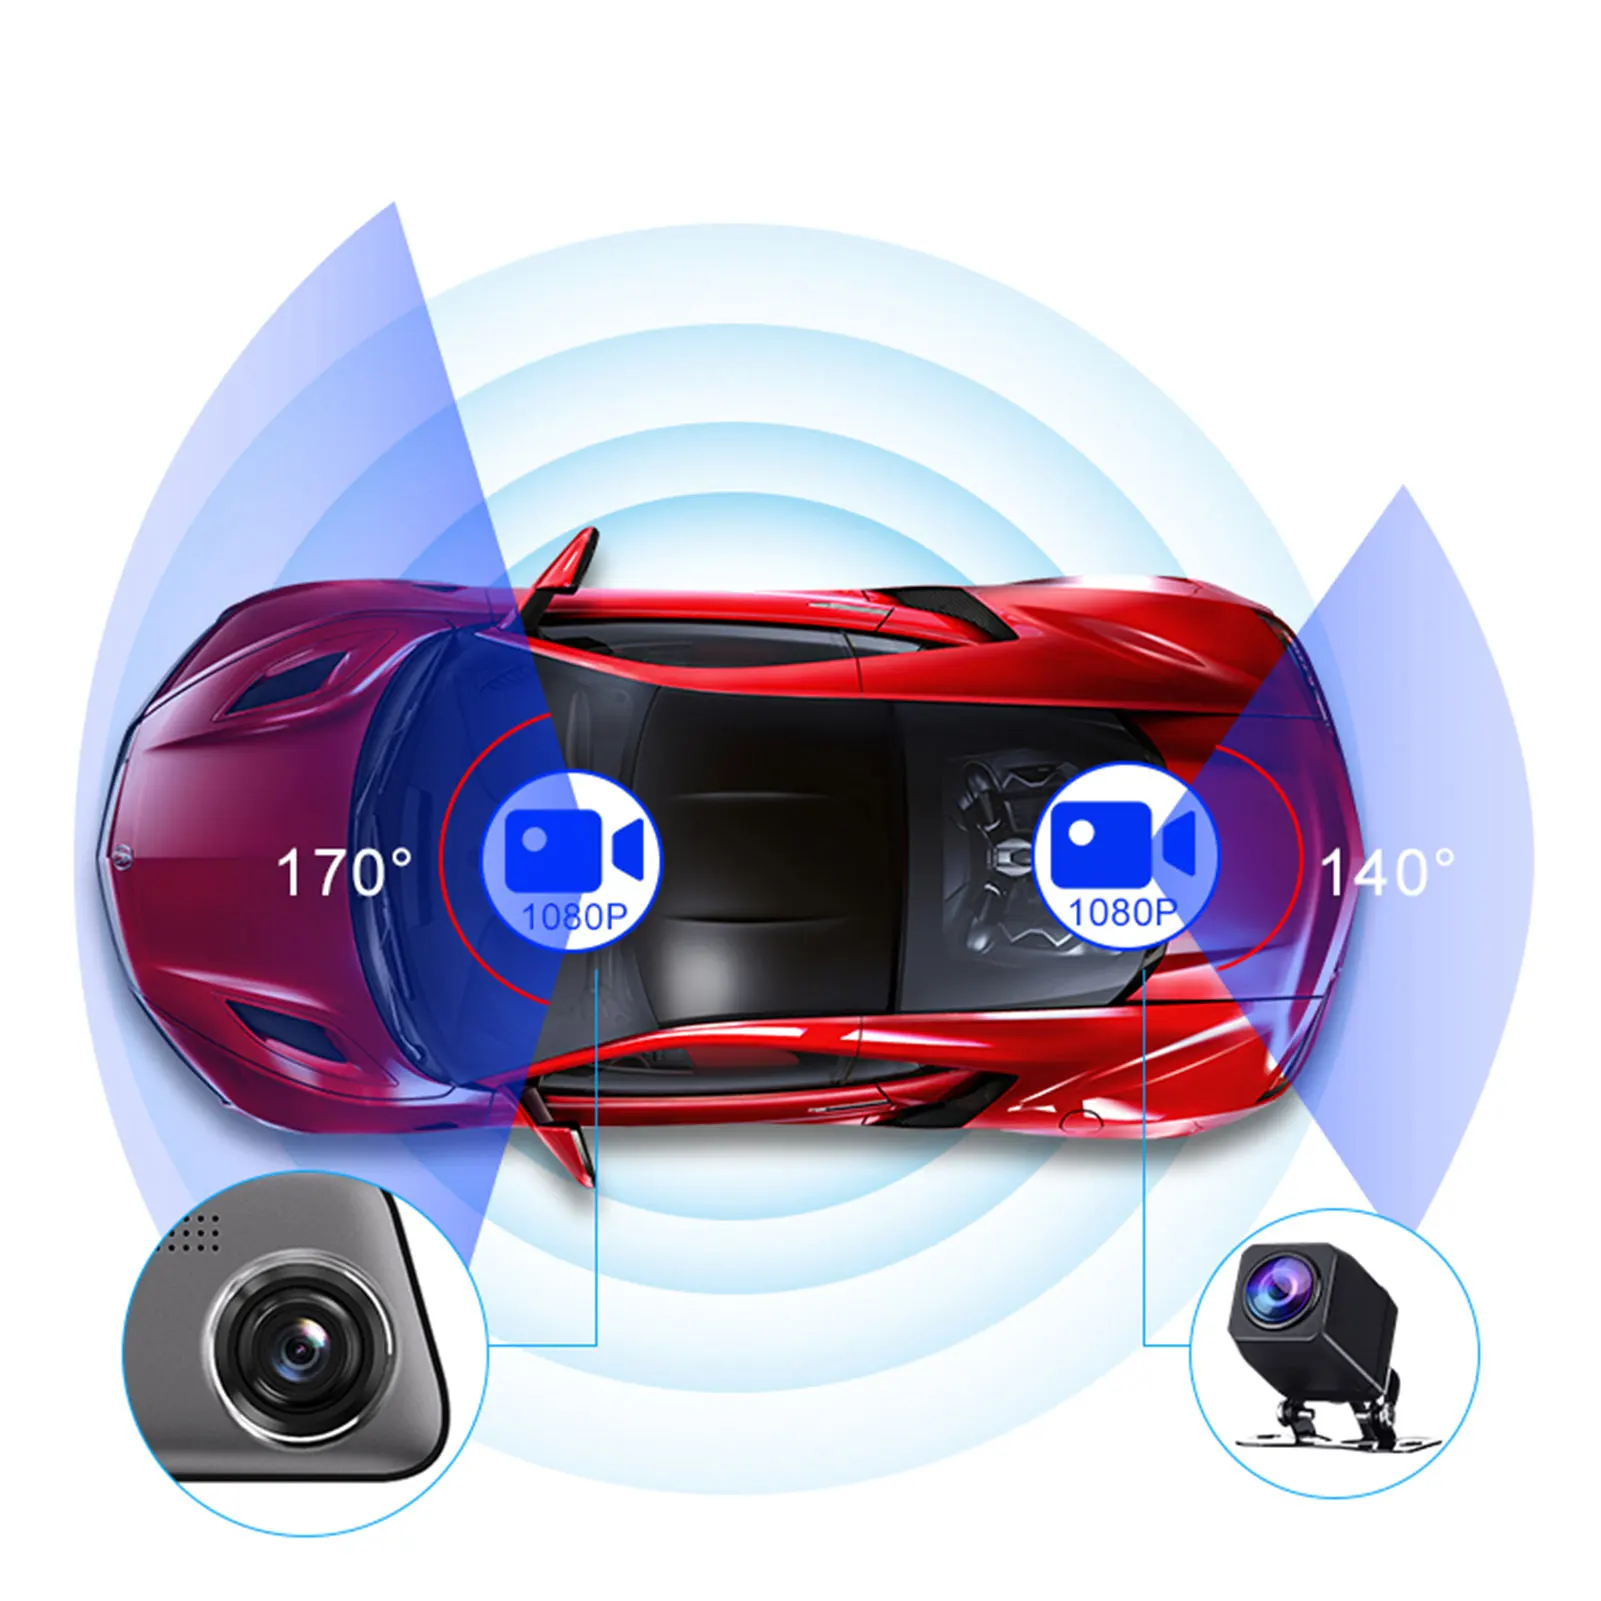 S11 12 Colių Automobilių DVR, G-sensorius Jutiklinį Ekraną Srautiniu būdu perduoti mediją Dvigubo Objektyvo Vaizdo įrašymo galinio vaizdo Veidrodis Brūkšnys Cam Priekinio Ir Galinio vaizdo Kamera